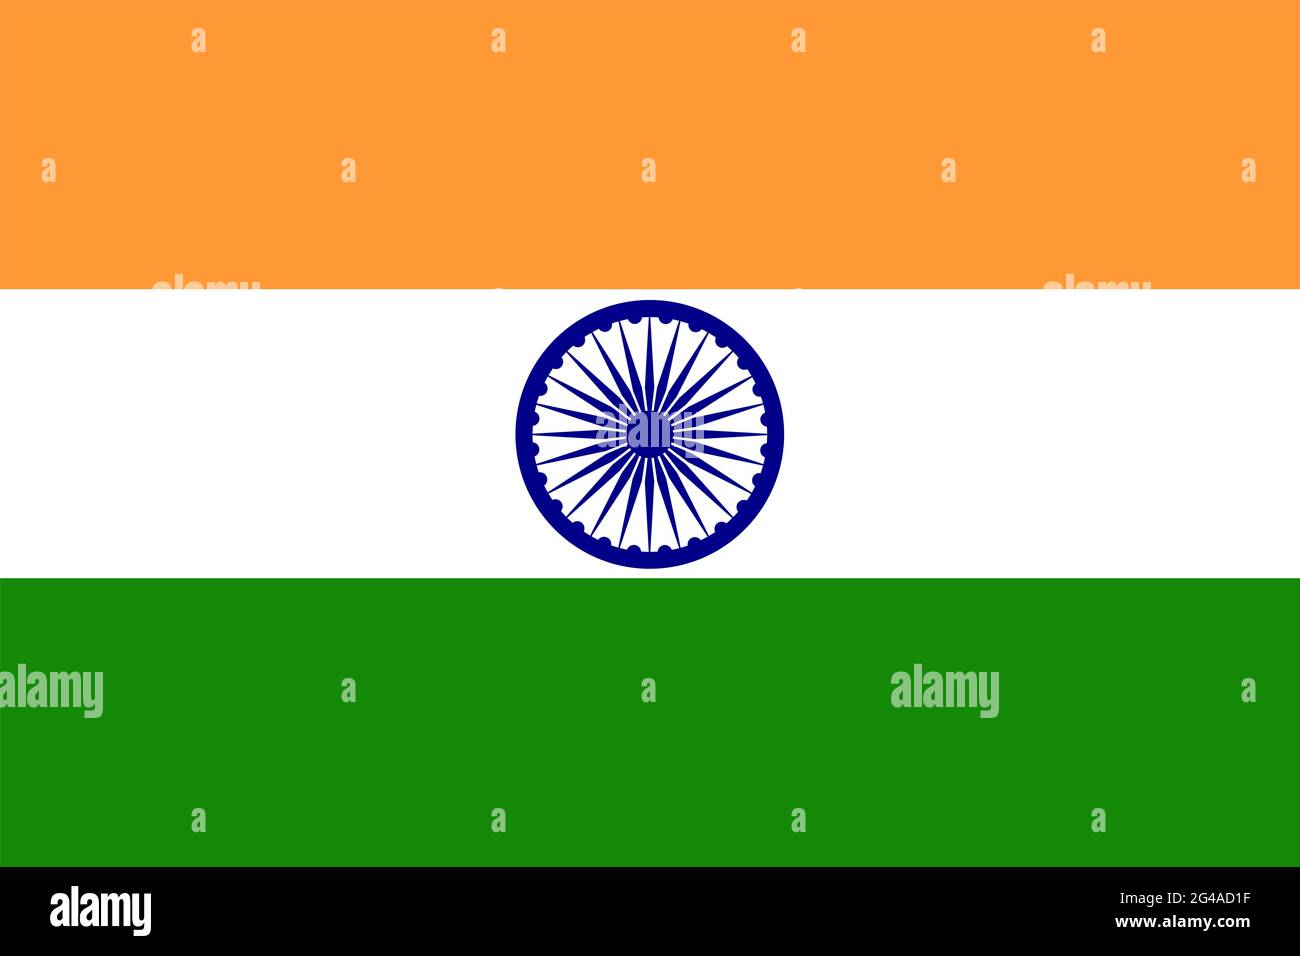 Bandiera nazionale di Indai, भारतीय ध्वज, Foto Stock